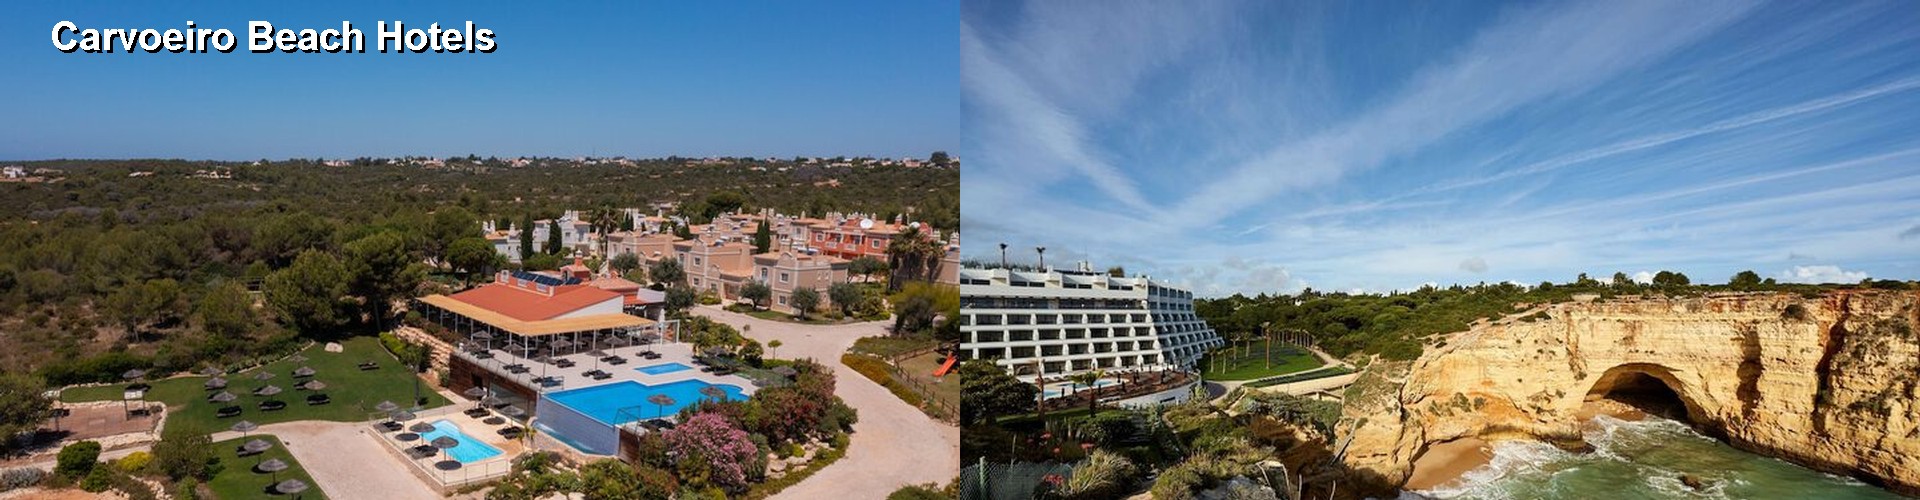 5 Best Hotels near Carvoeiro Beach